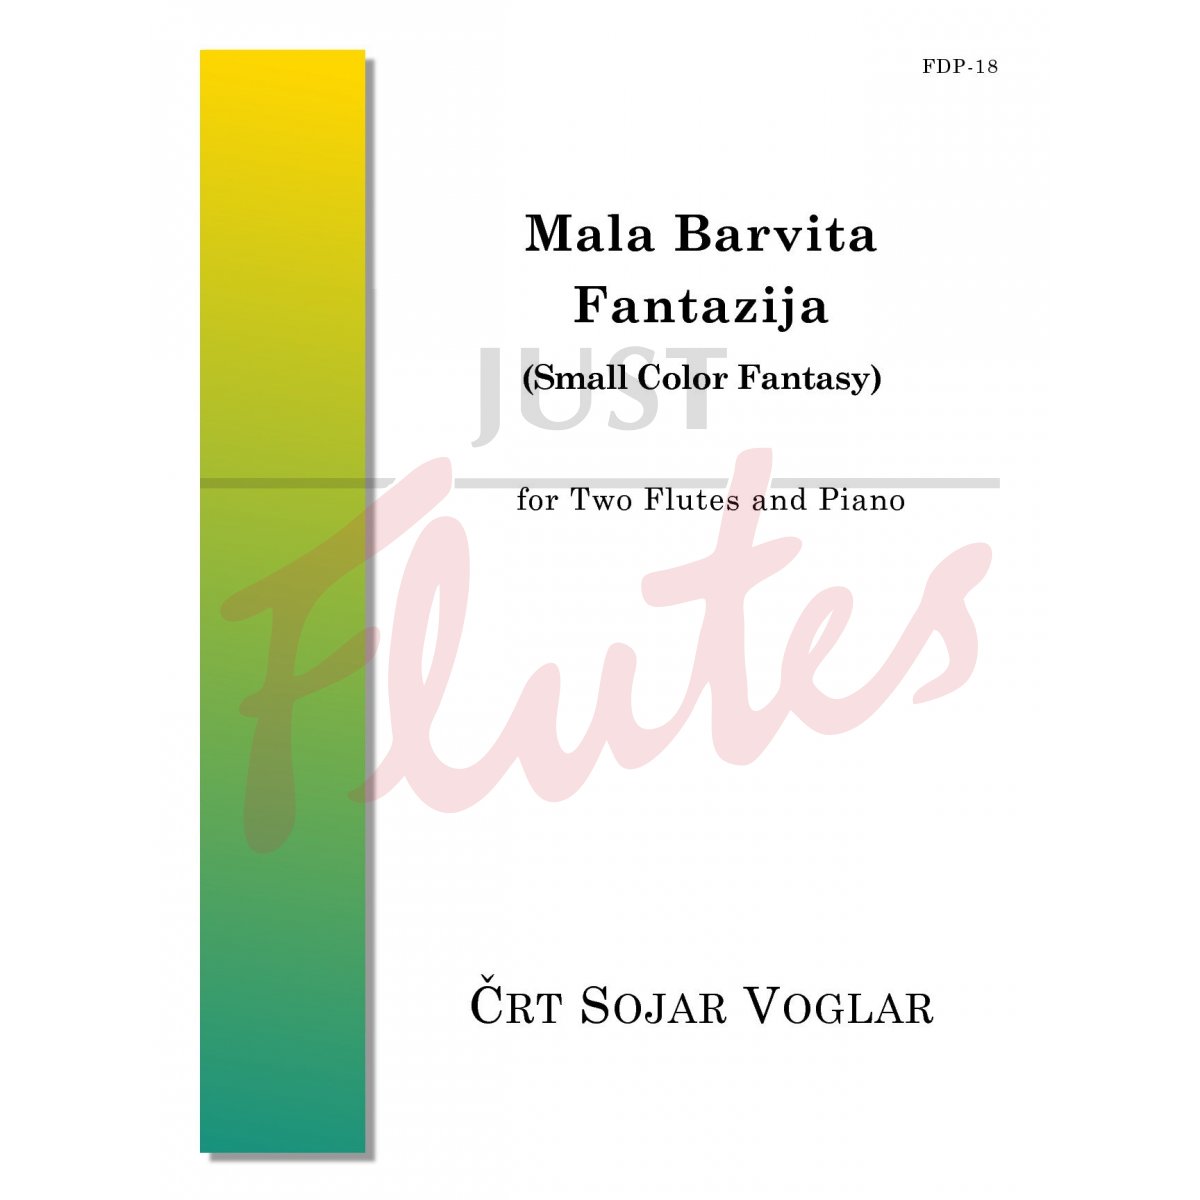 Mala Barvita Fantazija (Small Color Fantasy) for Two Flutes and Piano